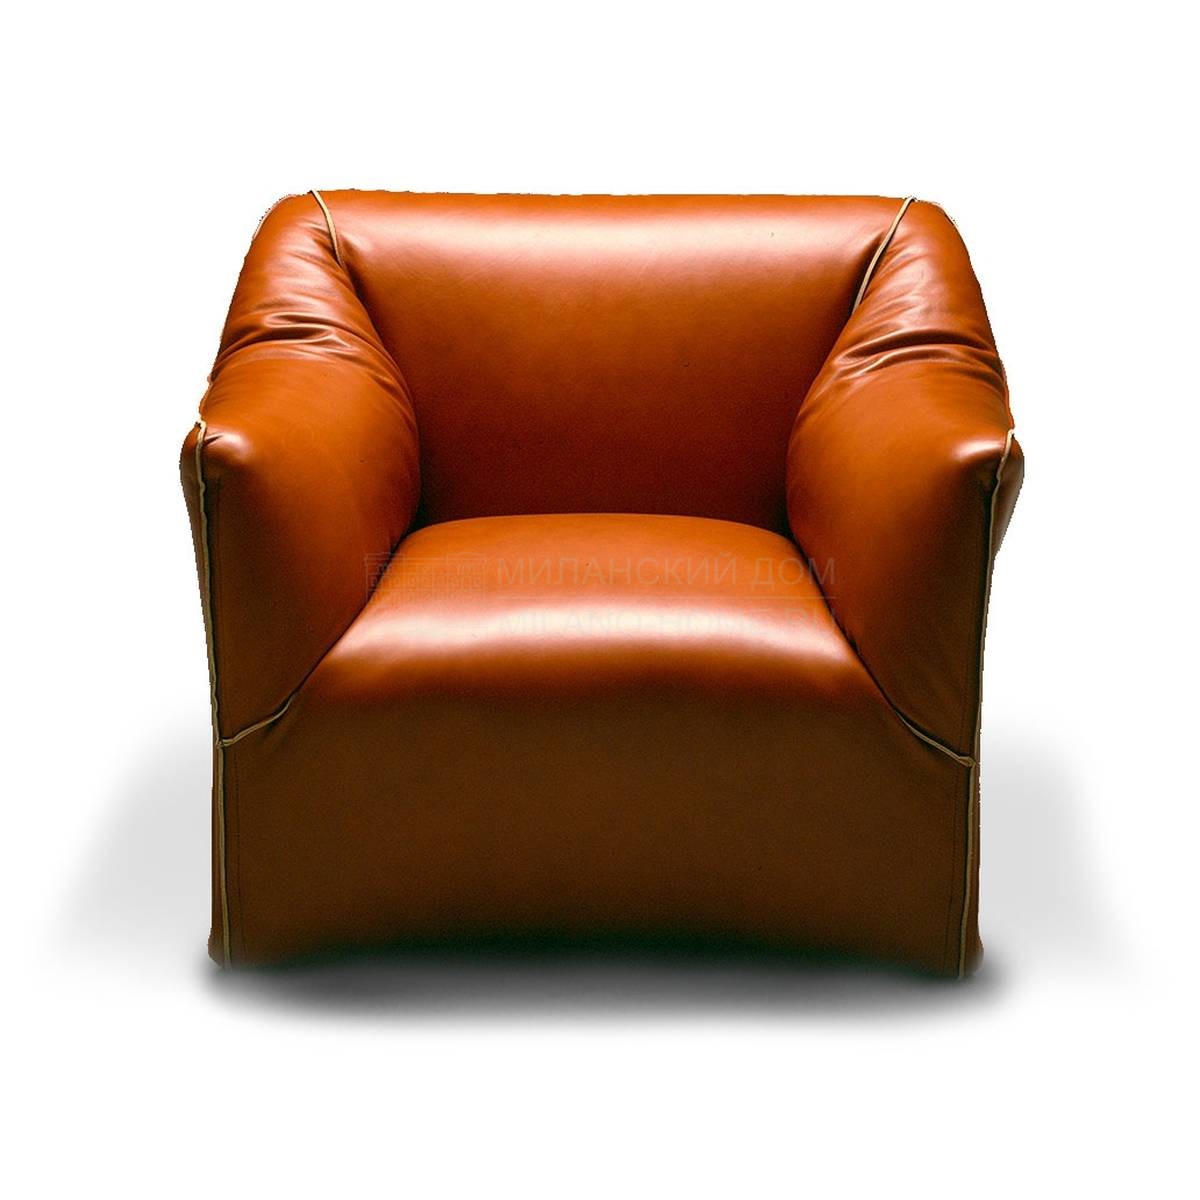 Кожаное кресло I Contemporanei/685 armchair из Италии фабрики CASSINA